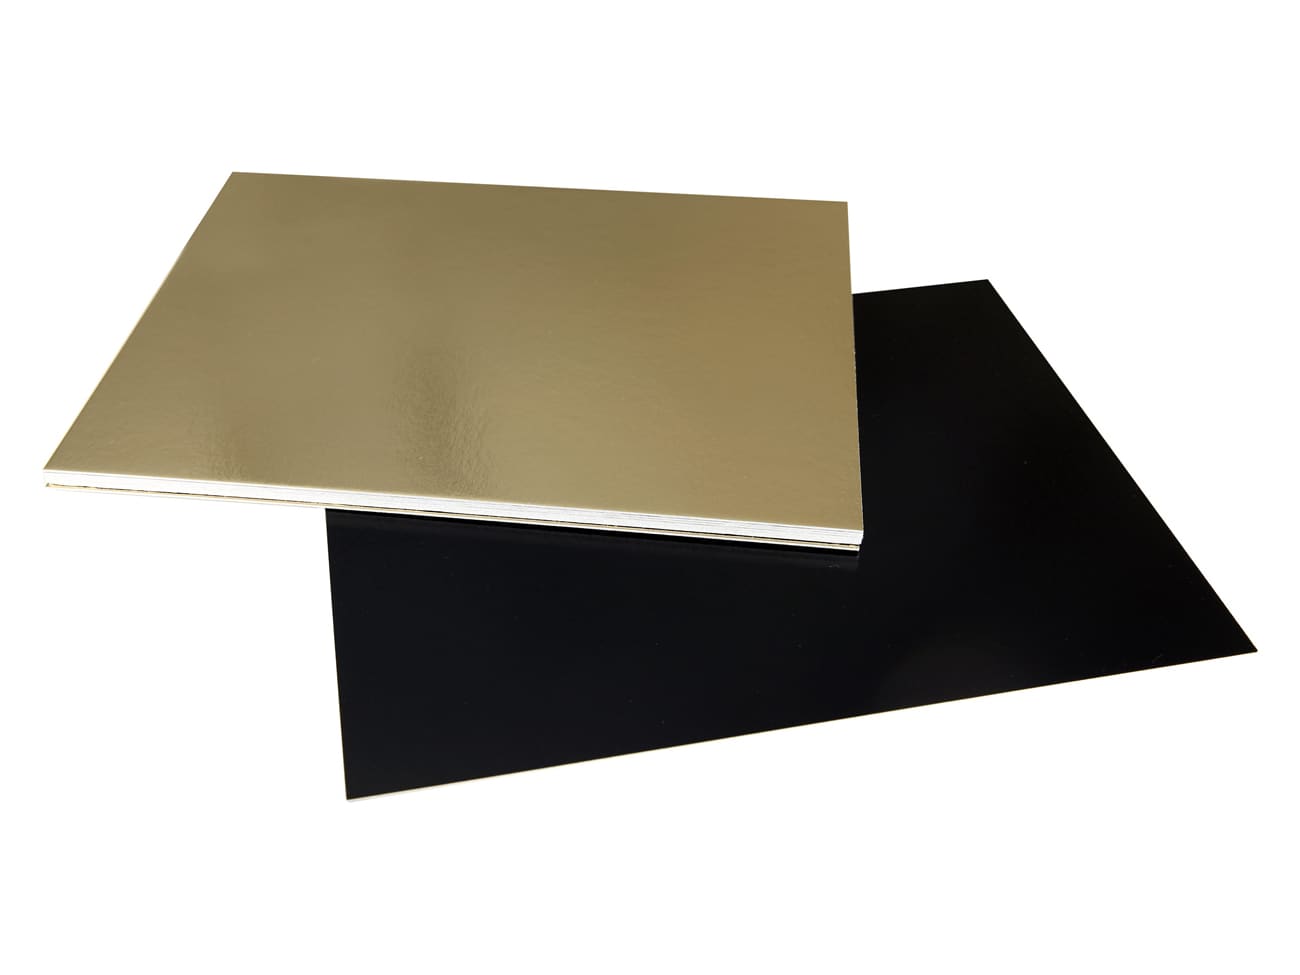 https://files.meilleurduchef.com/mdc/photo/produit/tra/plaque-carton-rectangle-or-noir-30-10/plaque-carton-rectangle-or-noir-30-10-1-main-1300.jpg